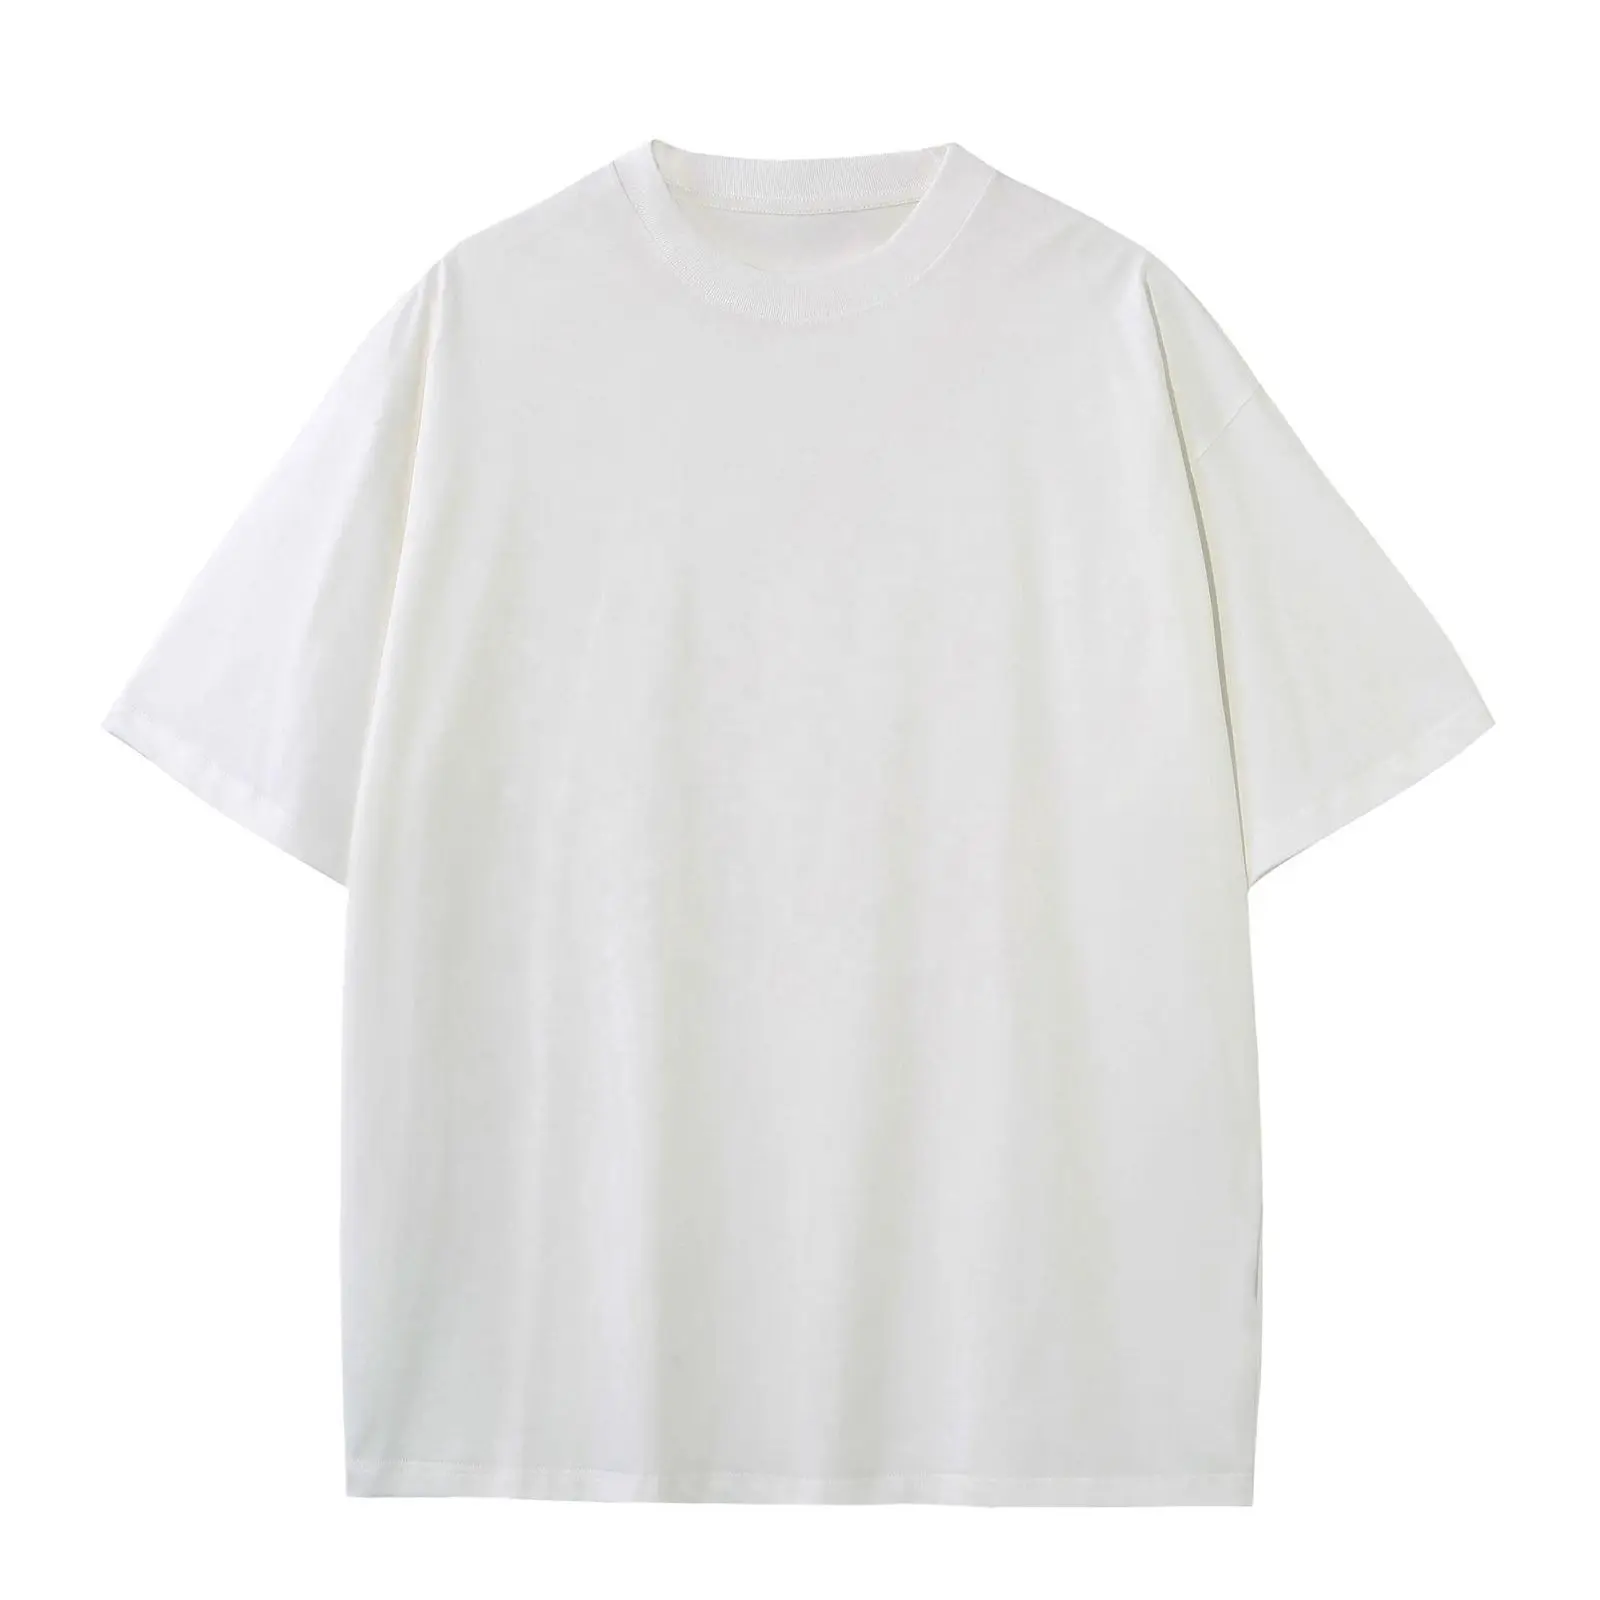 Camiseta masculina de grandes dimensões 100% algodão, camiseta em branco com estampa 3D de espuma, preto e branco, personalizada em massa